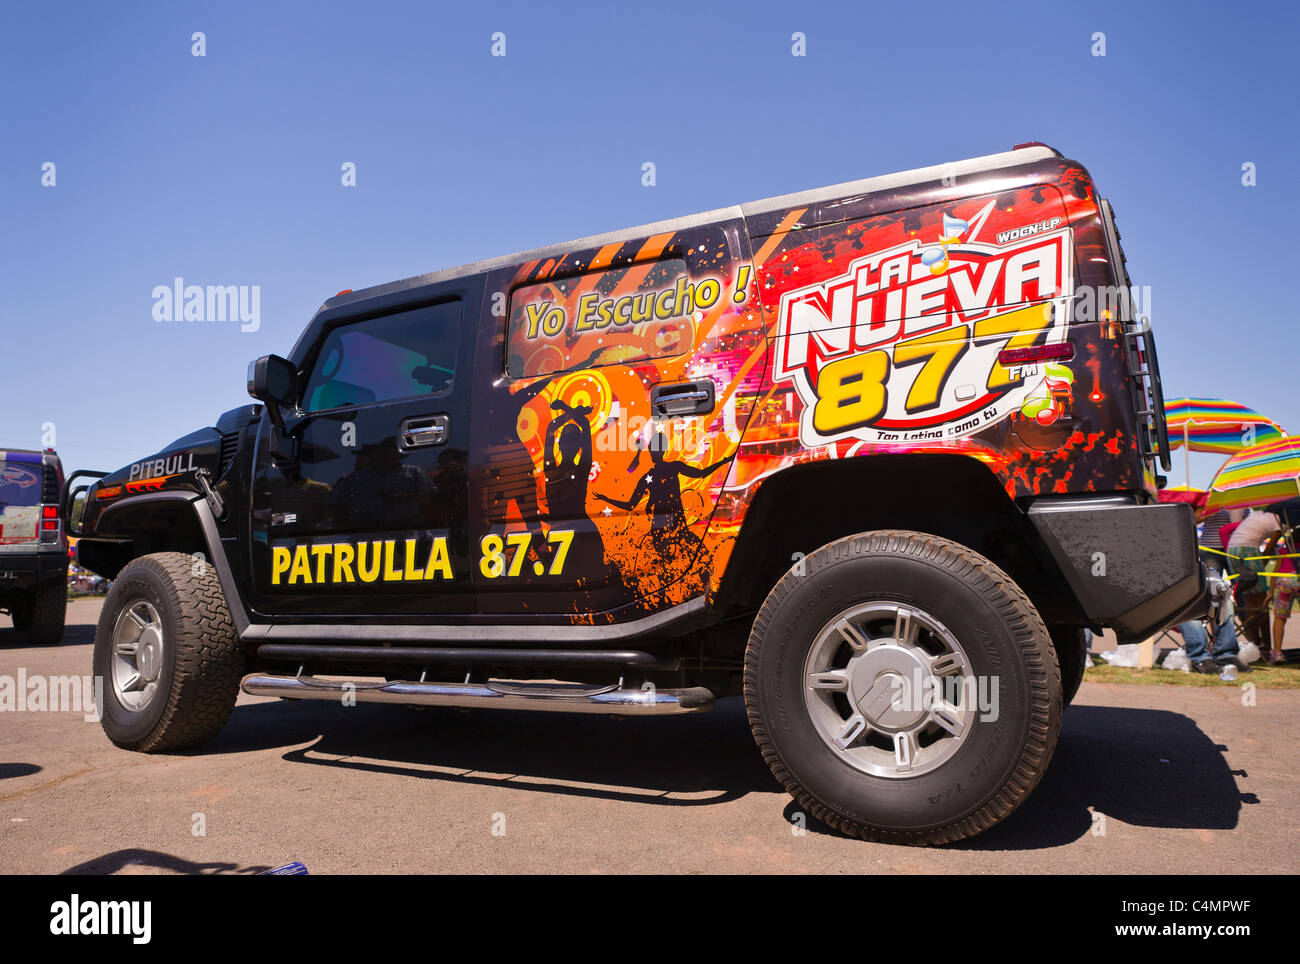 MANASSAS, VIRGINIA, USA - Truck in Bolivian folklife festival parade. Stock Photo